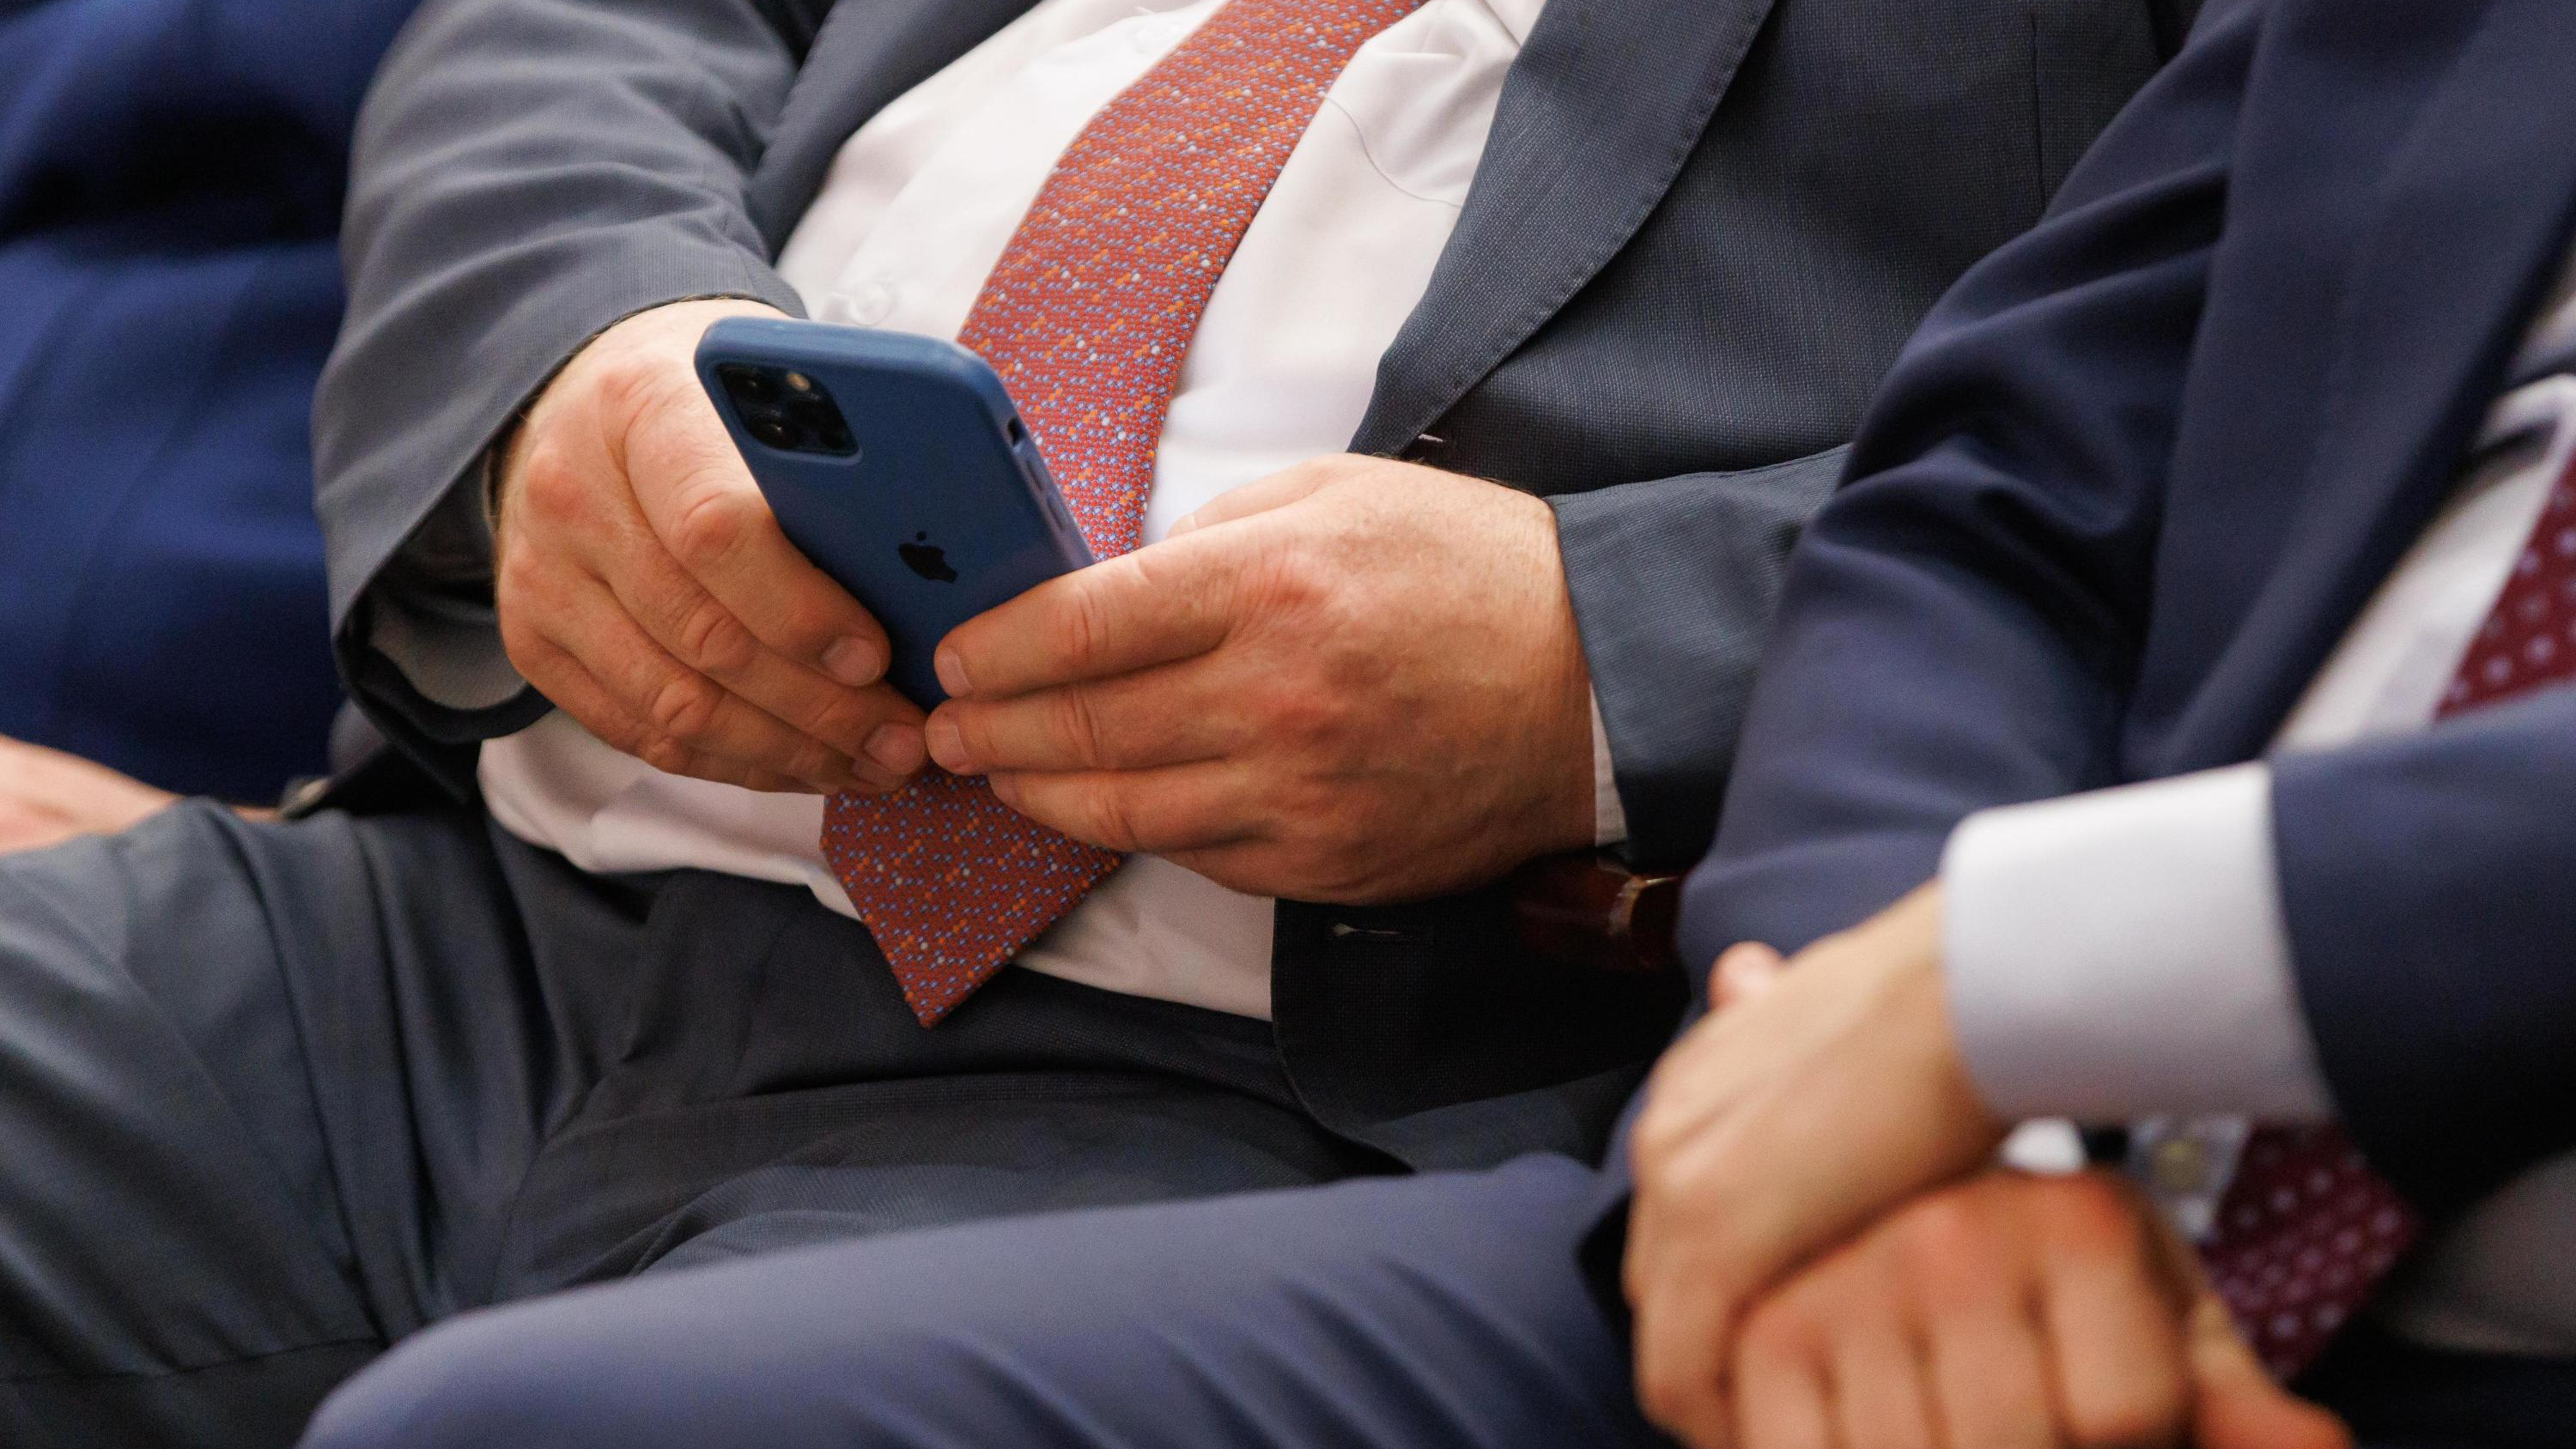 Депутат Госдумы из Кузбасса заявил, что Google и Apple могут отключить смартфоны россиянам. Что, правда могут?